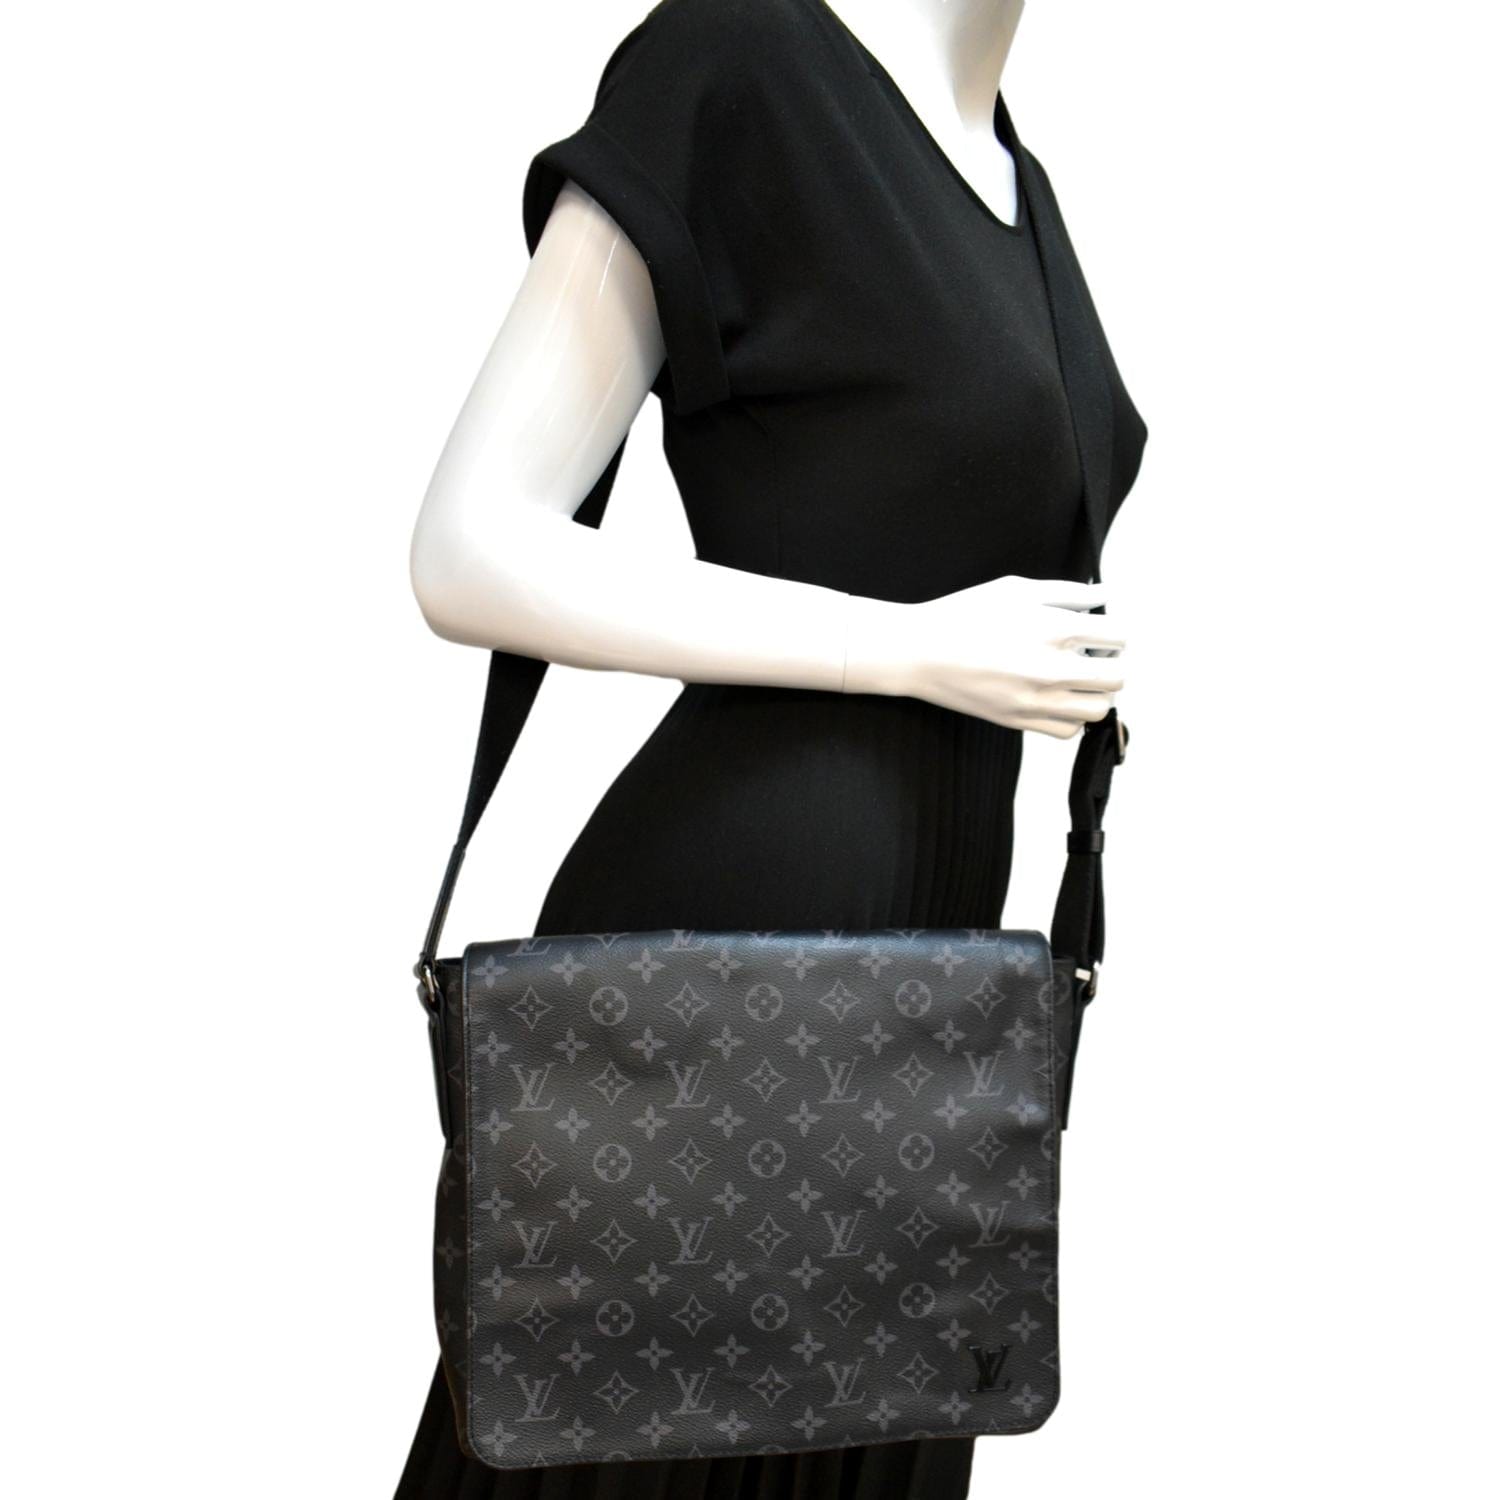 Louis+Vuitton+District+Messenger+Bag+PM+Black+Canvas+Monogram+